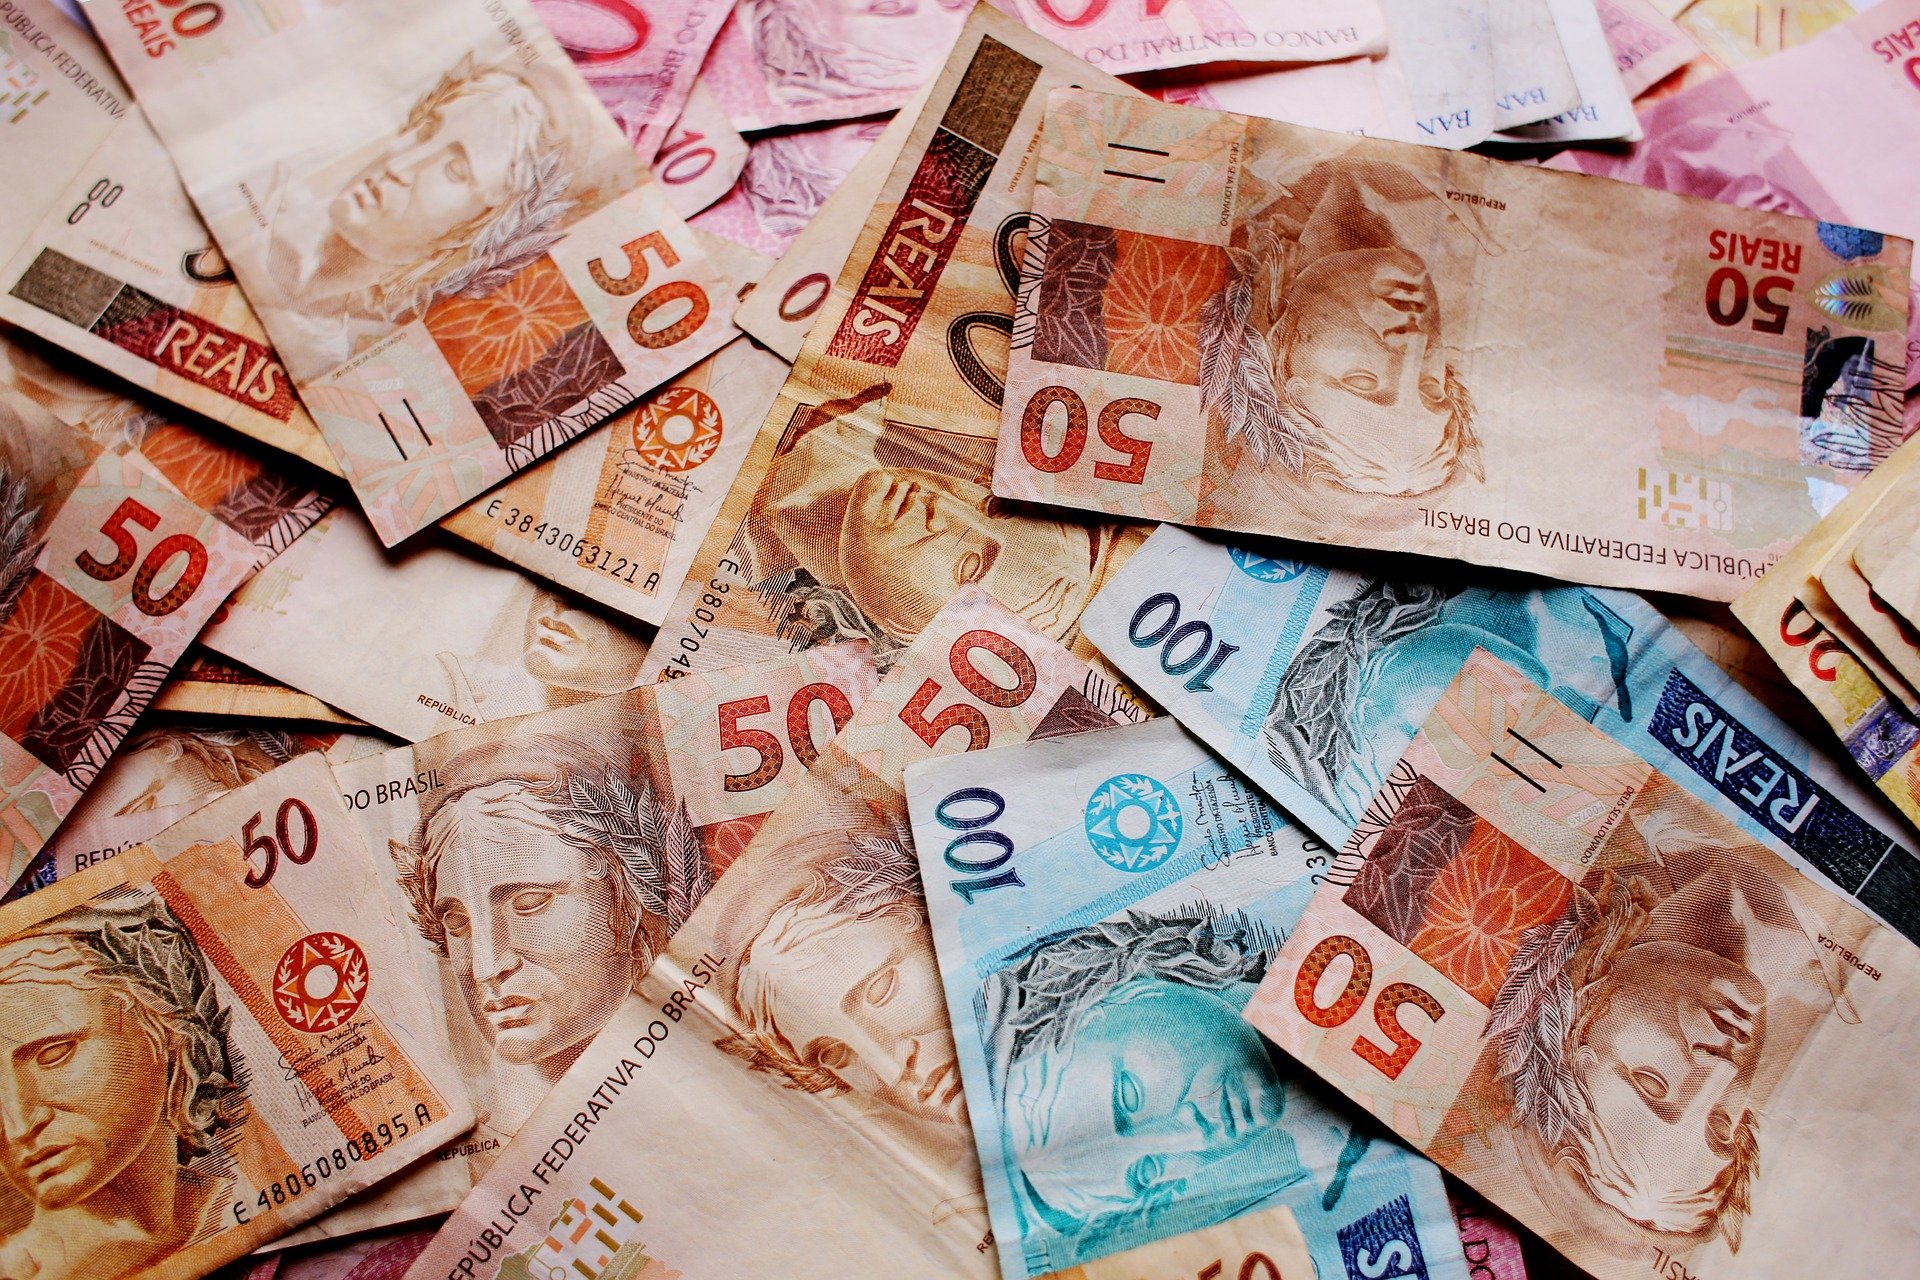 Moedas do Brasil, China e Turquia estão “subvalorizadas”, de acordo com Instituto de Finanças